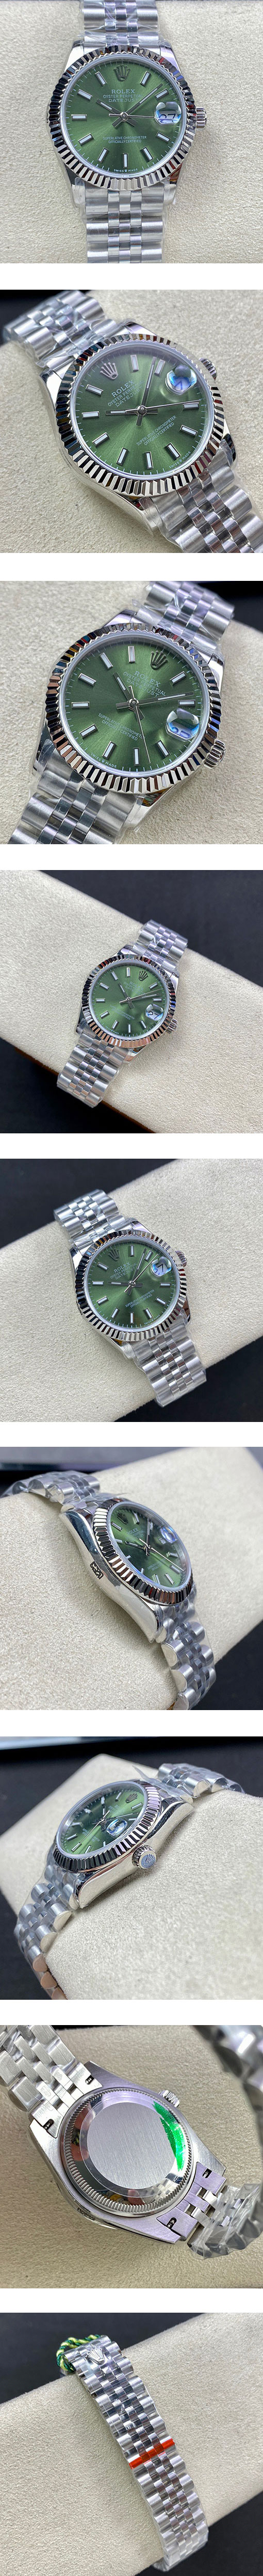 ロレックス2022人気 デイトジャスト M126234-0051 グリーン  36mm N級品ブランドコピー腕時計